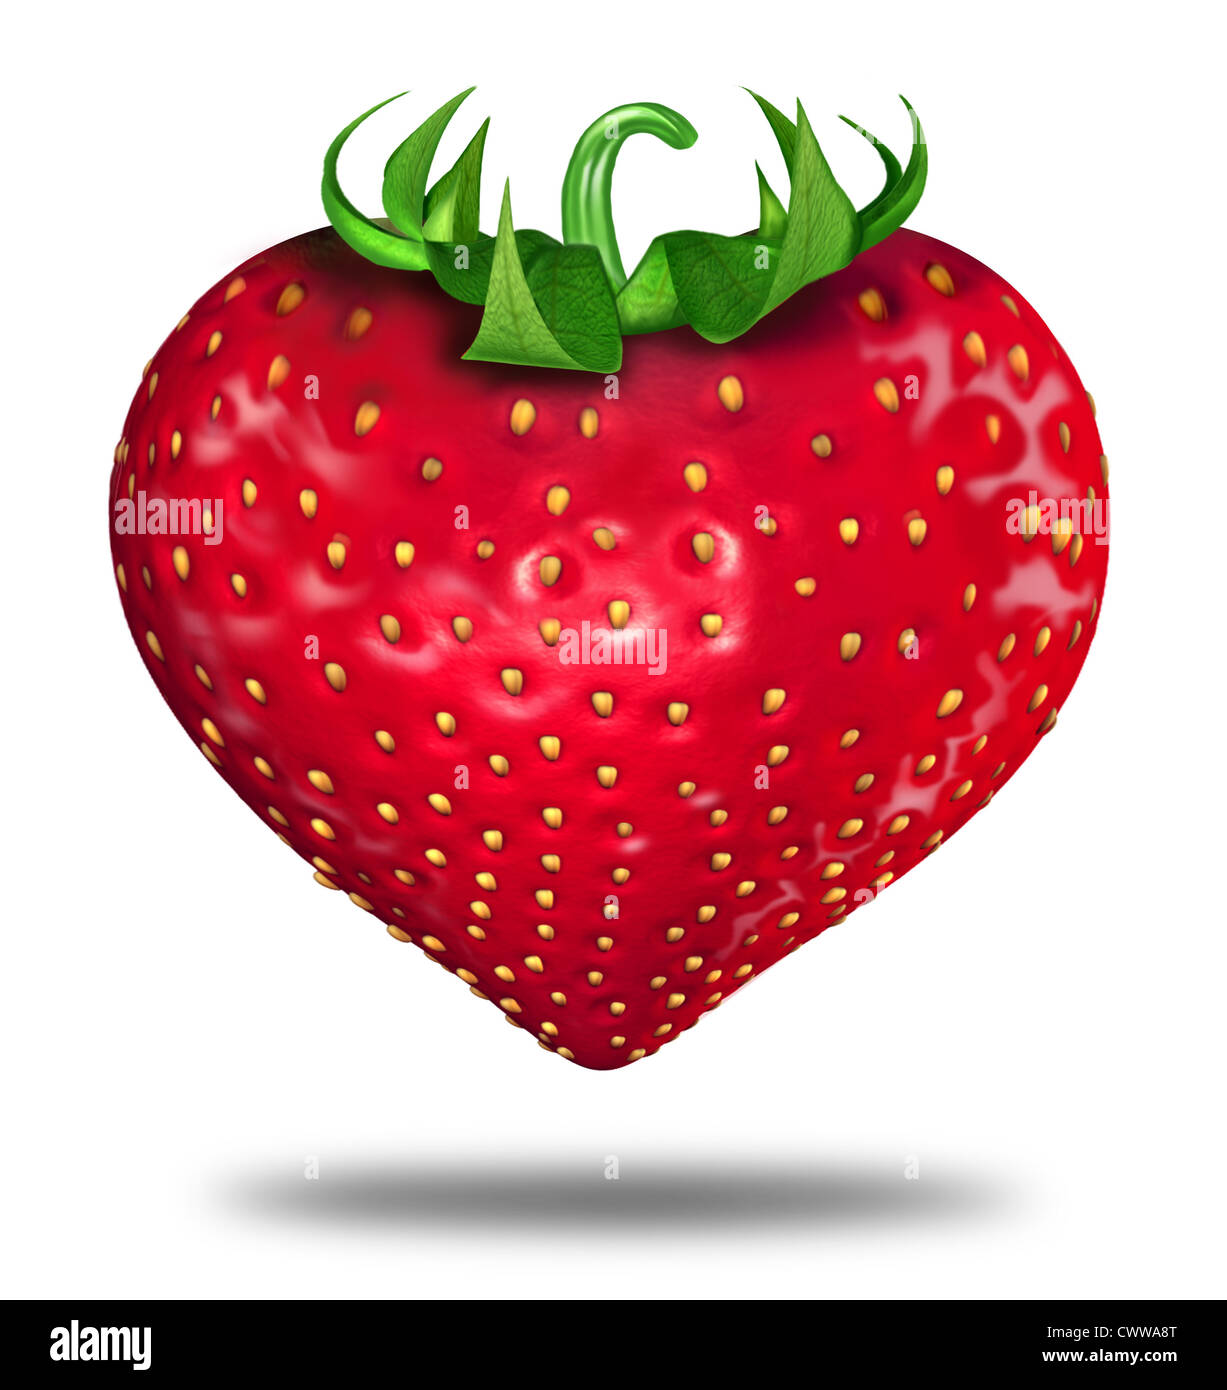 Gesunde Lebensweise Symbol vertreten durch eine rote Erdbeere in der Form eines Herzens zu zeigen, das Konzept der Gesundheit des Essens gut mit Stockfoto